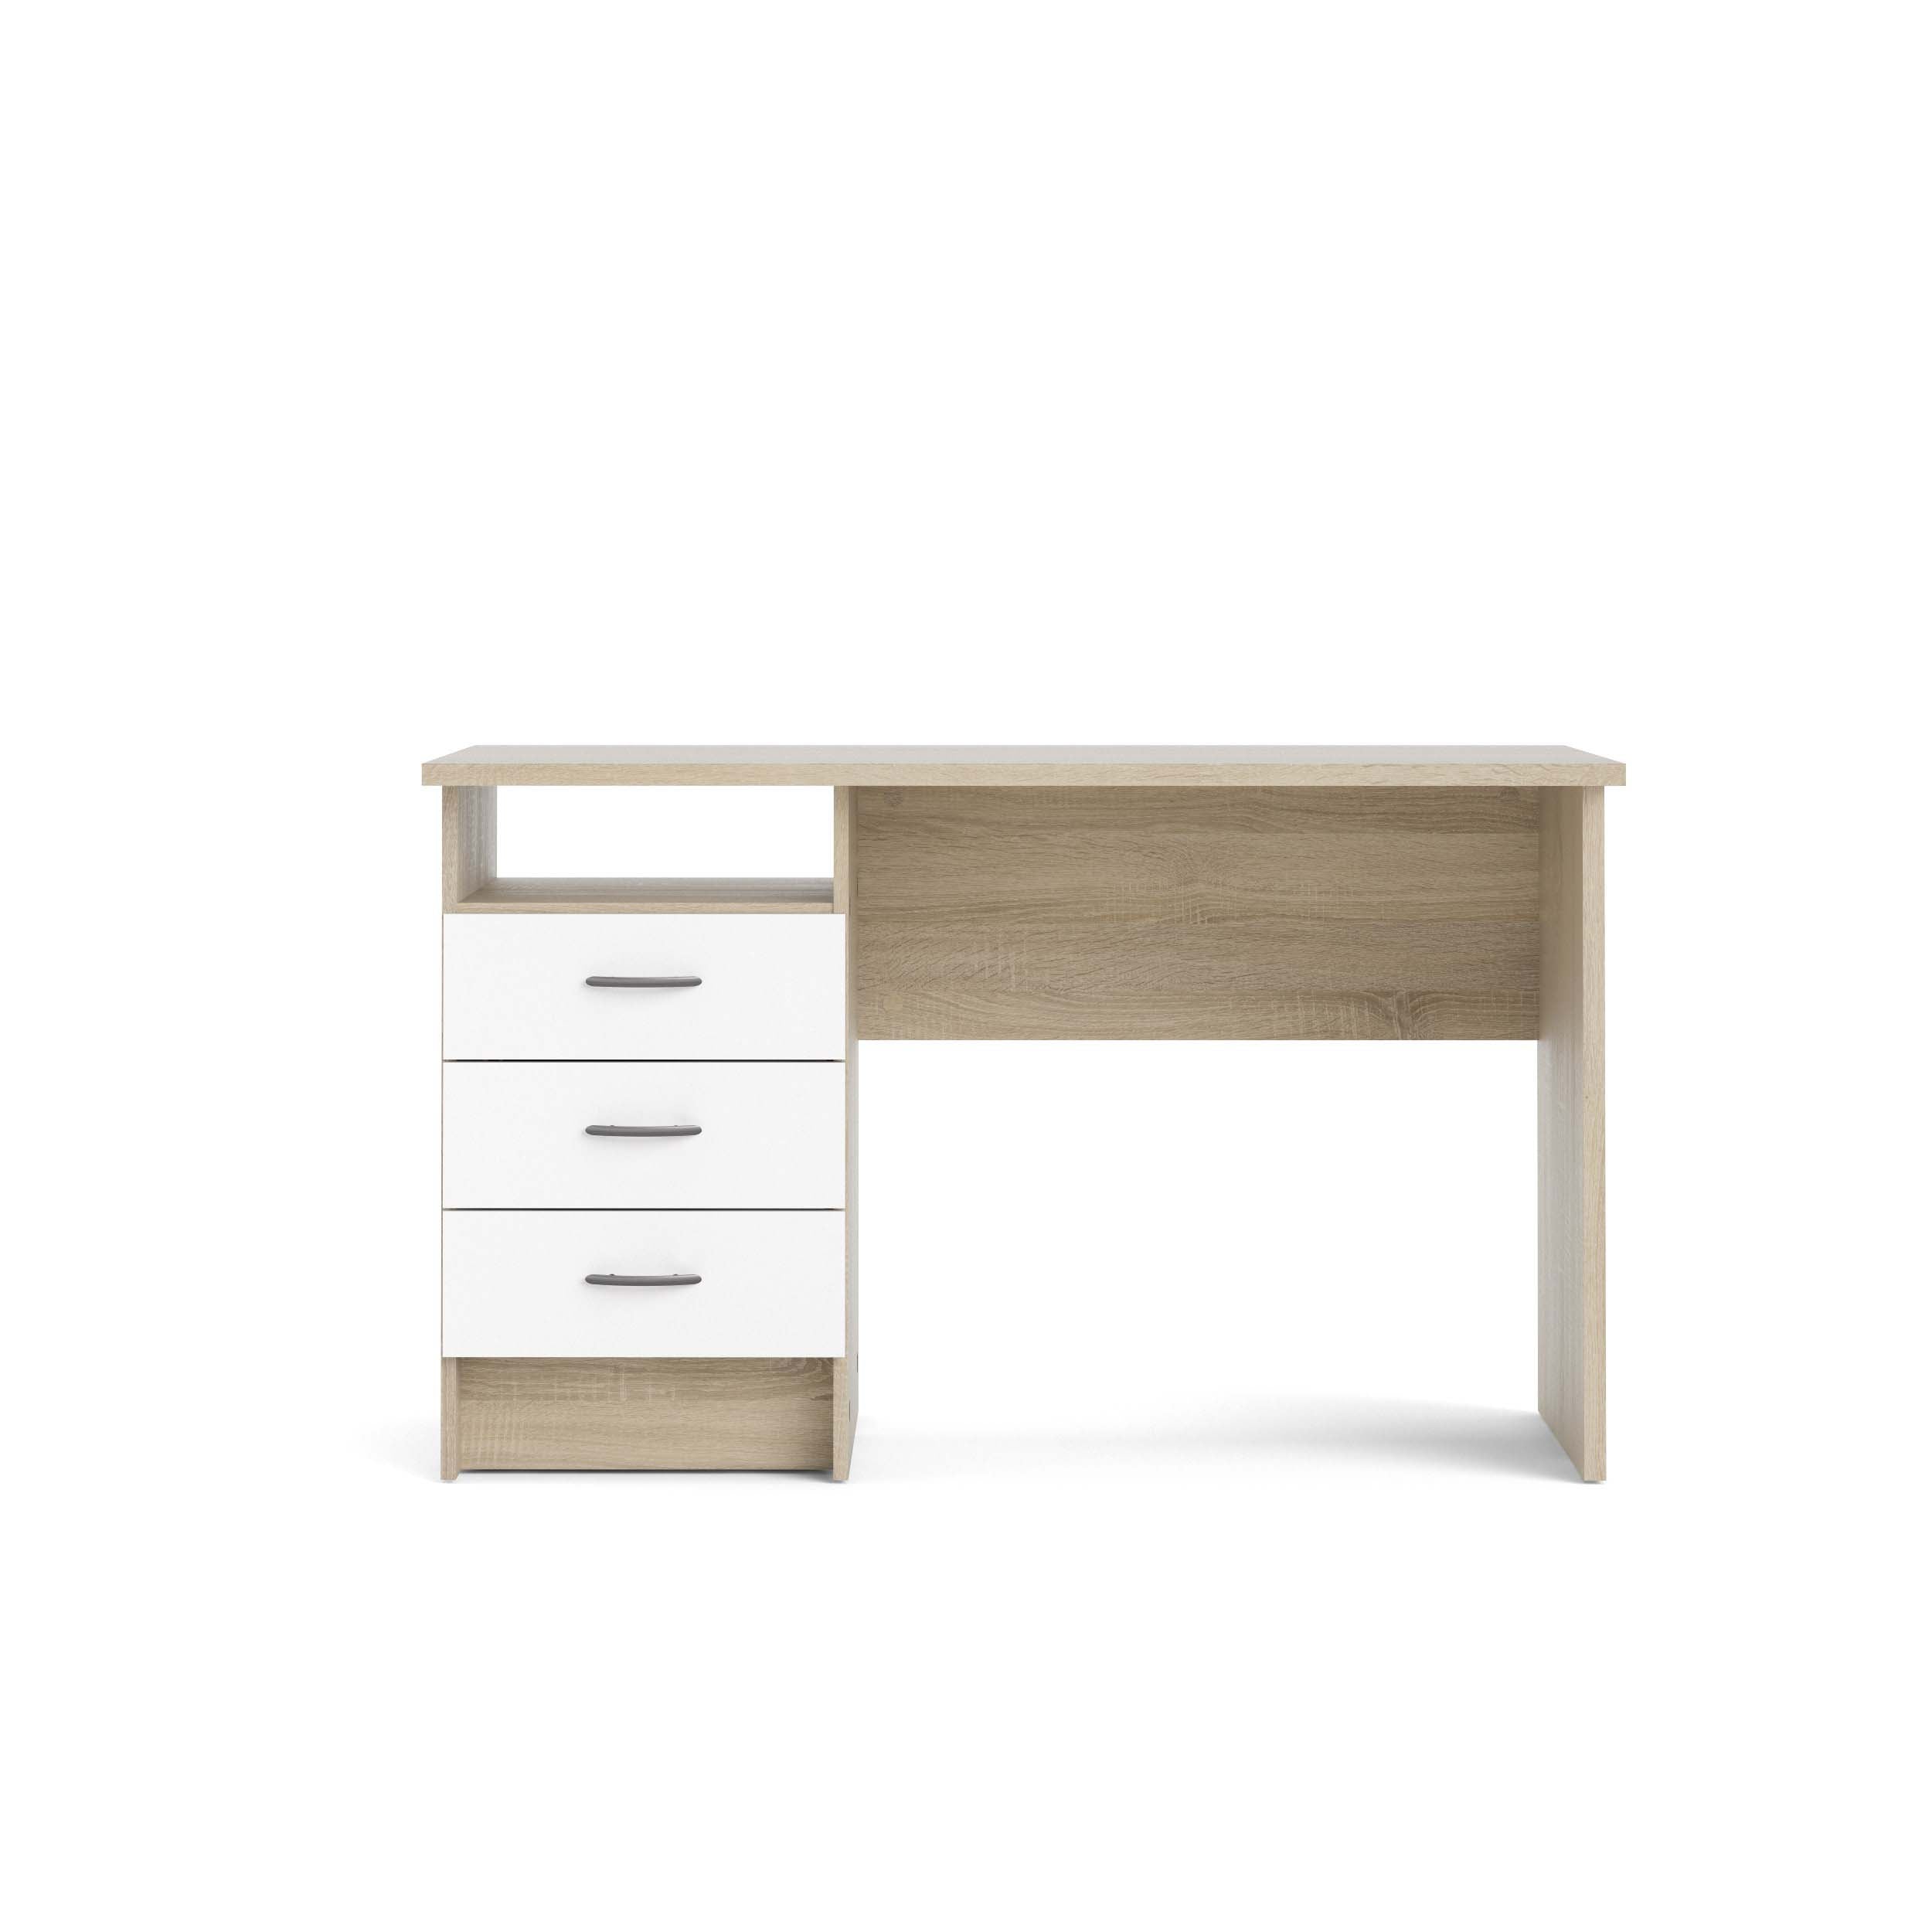 Function Plus Standard Desk - Oak/White - 80134ak49